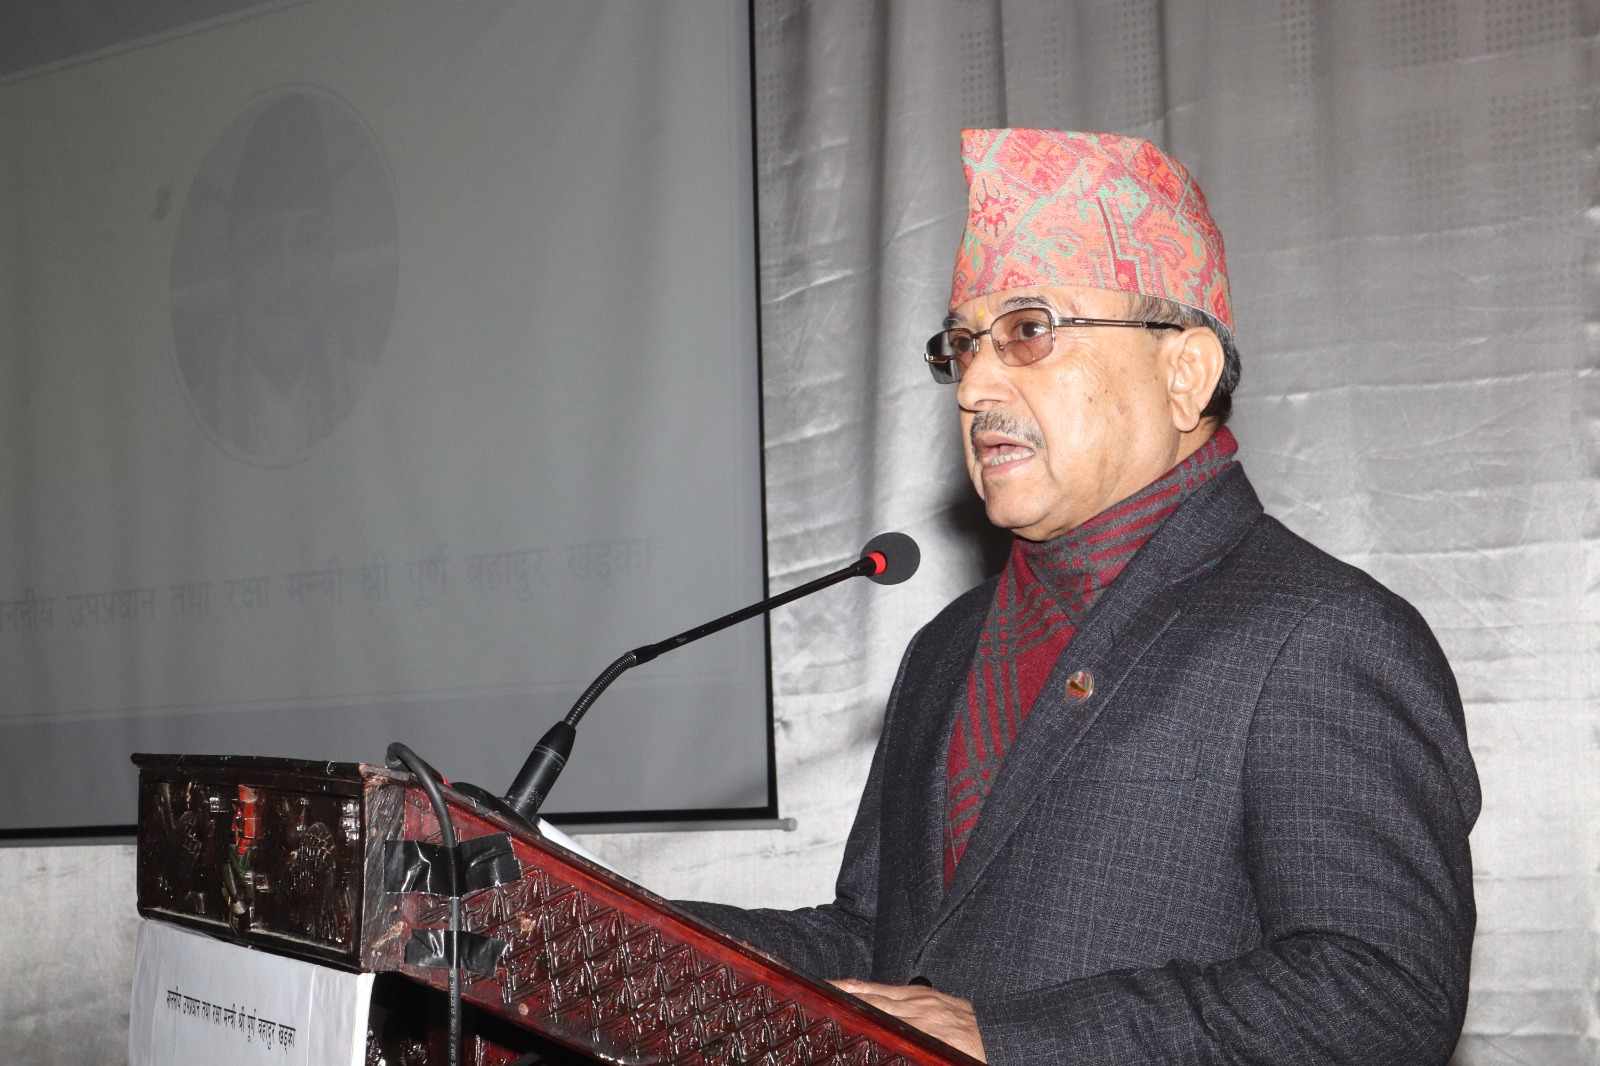 सरकार सञ्चालन गर्नेहरुले नेपाली जनतालाई शिरमा राखेर काम गर्नुपर्छः उपप्रधानमन्त्री खड्का